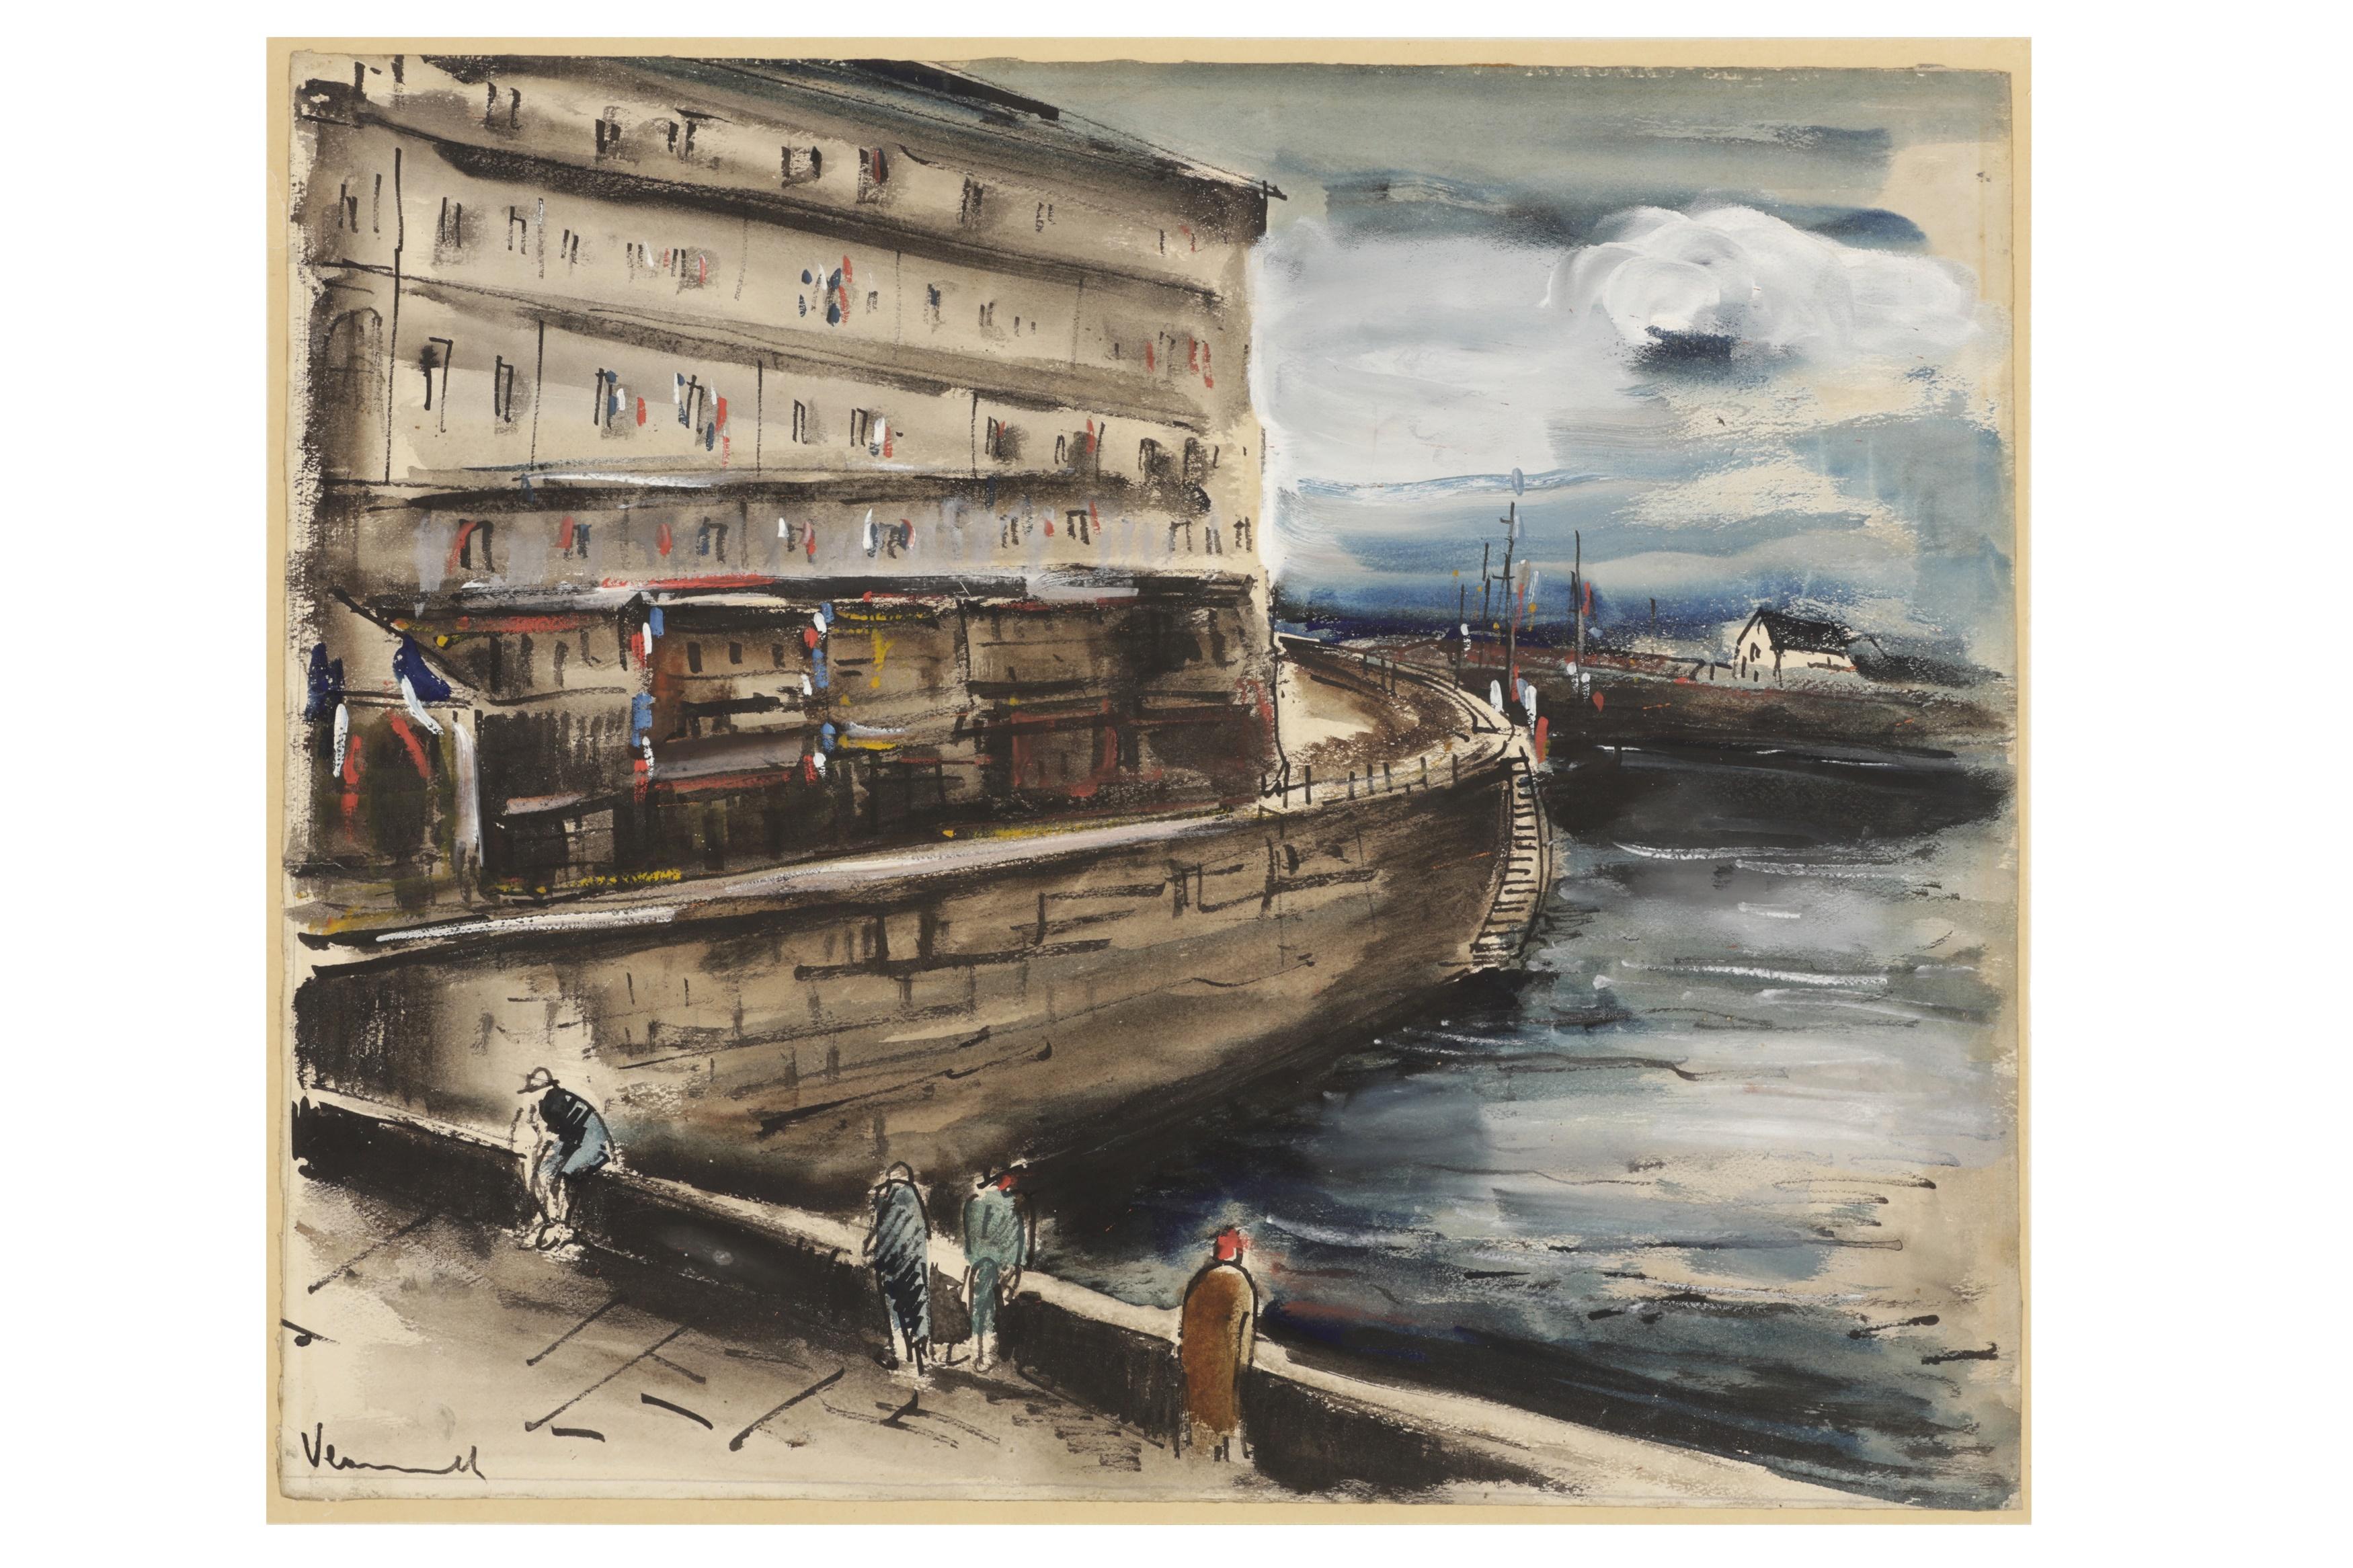 Maurice de Vlaminck war ein französischer Maler, der als eine der Speerspitzen des Fauvismus zu Beginn des 20. Jahrhunderts bekannt wurde. Er ist vor allem für seine Landschaften bekannt, hat aber auch Stillleben und Porträts geschaffen. 

Der 1876